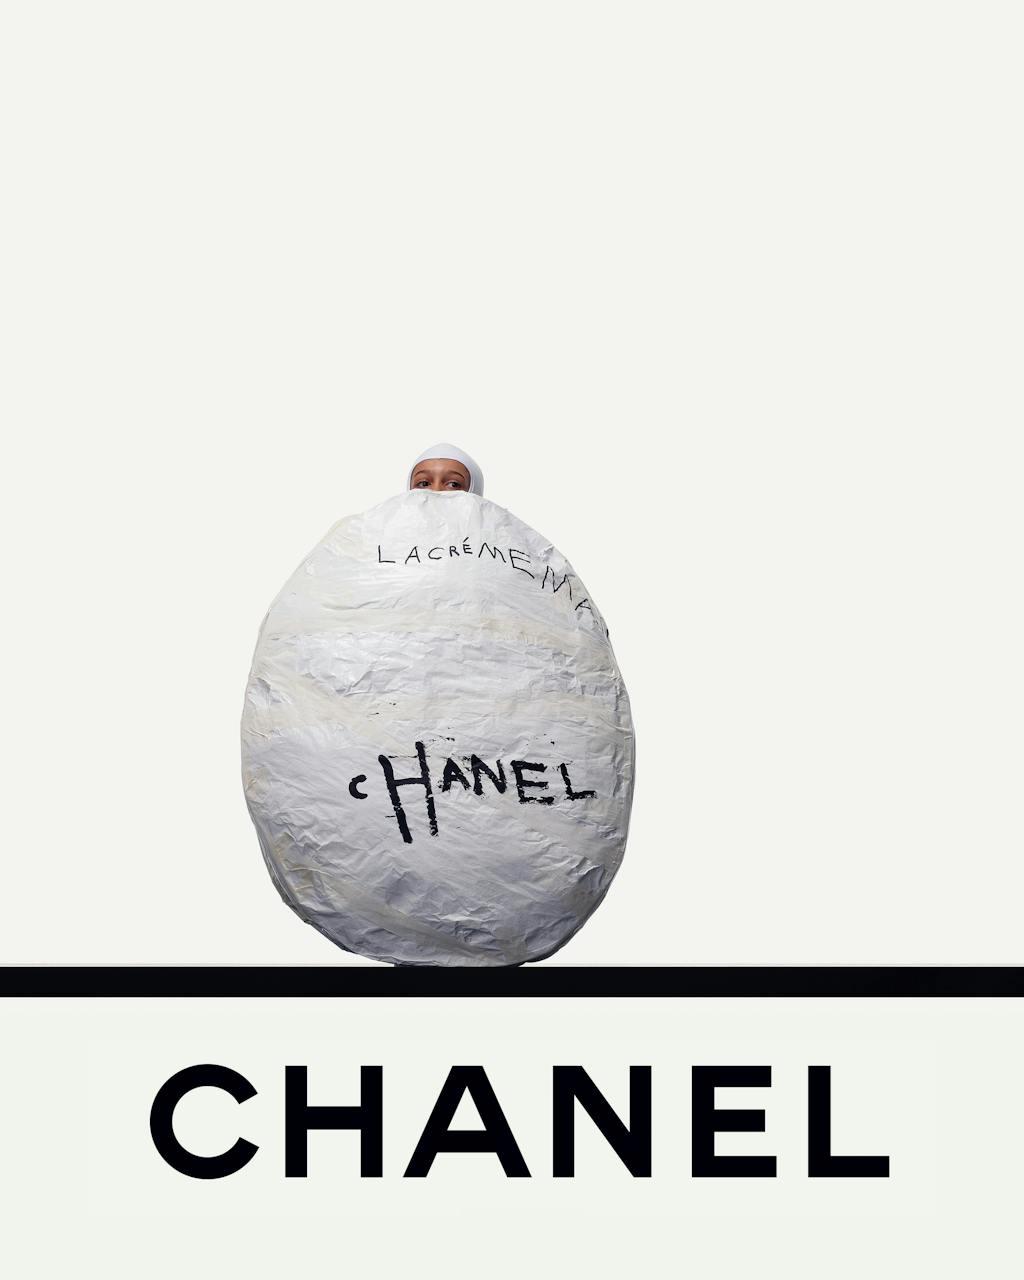 Chanel M&amp;F&rsquo;s Day - © Lambert | Lambert